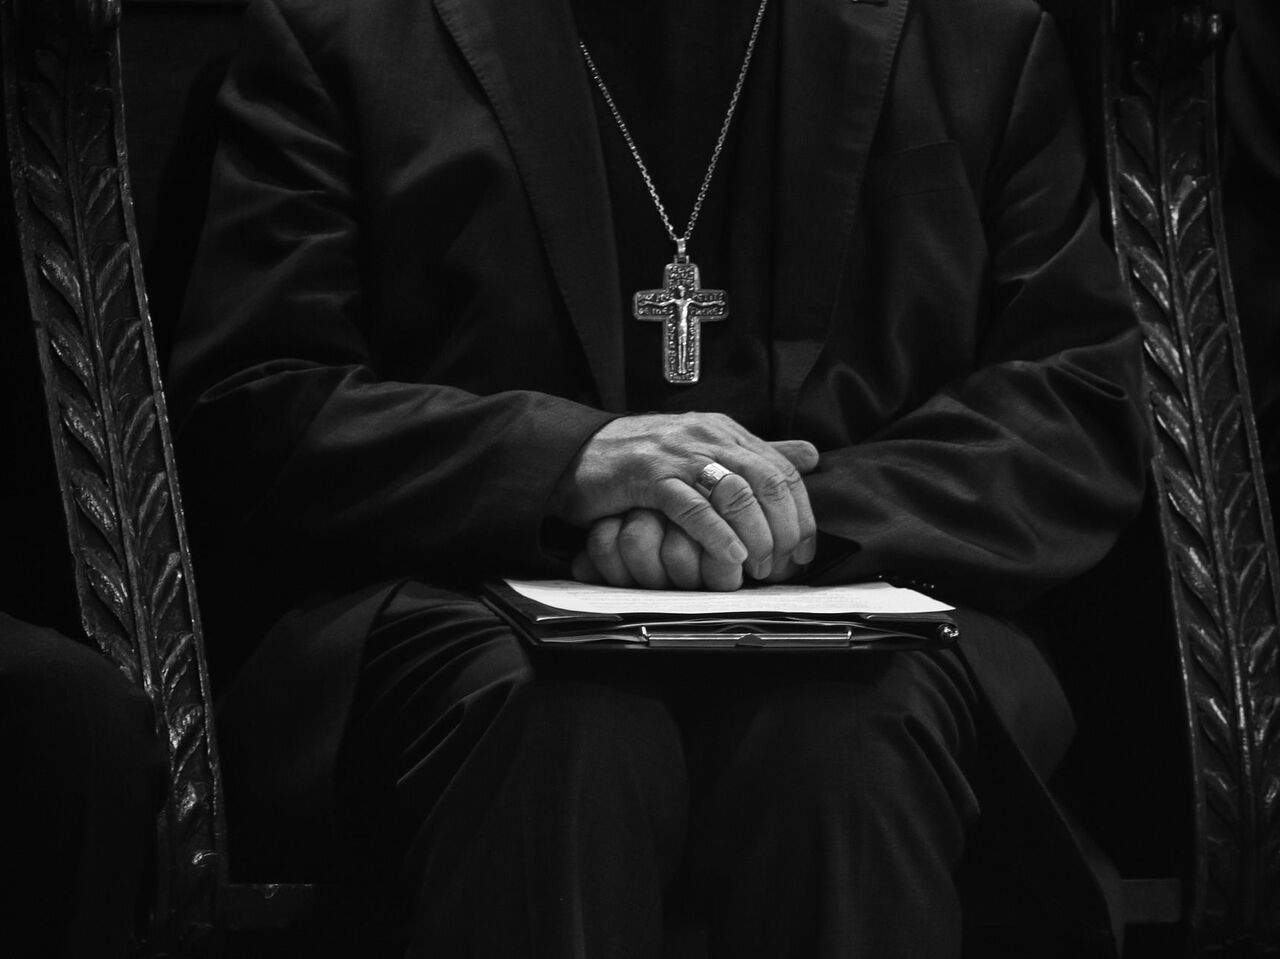 Colombia sacerdotes pederastas